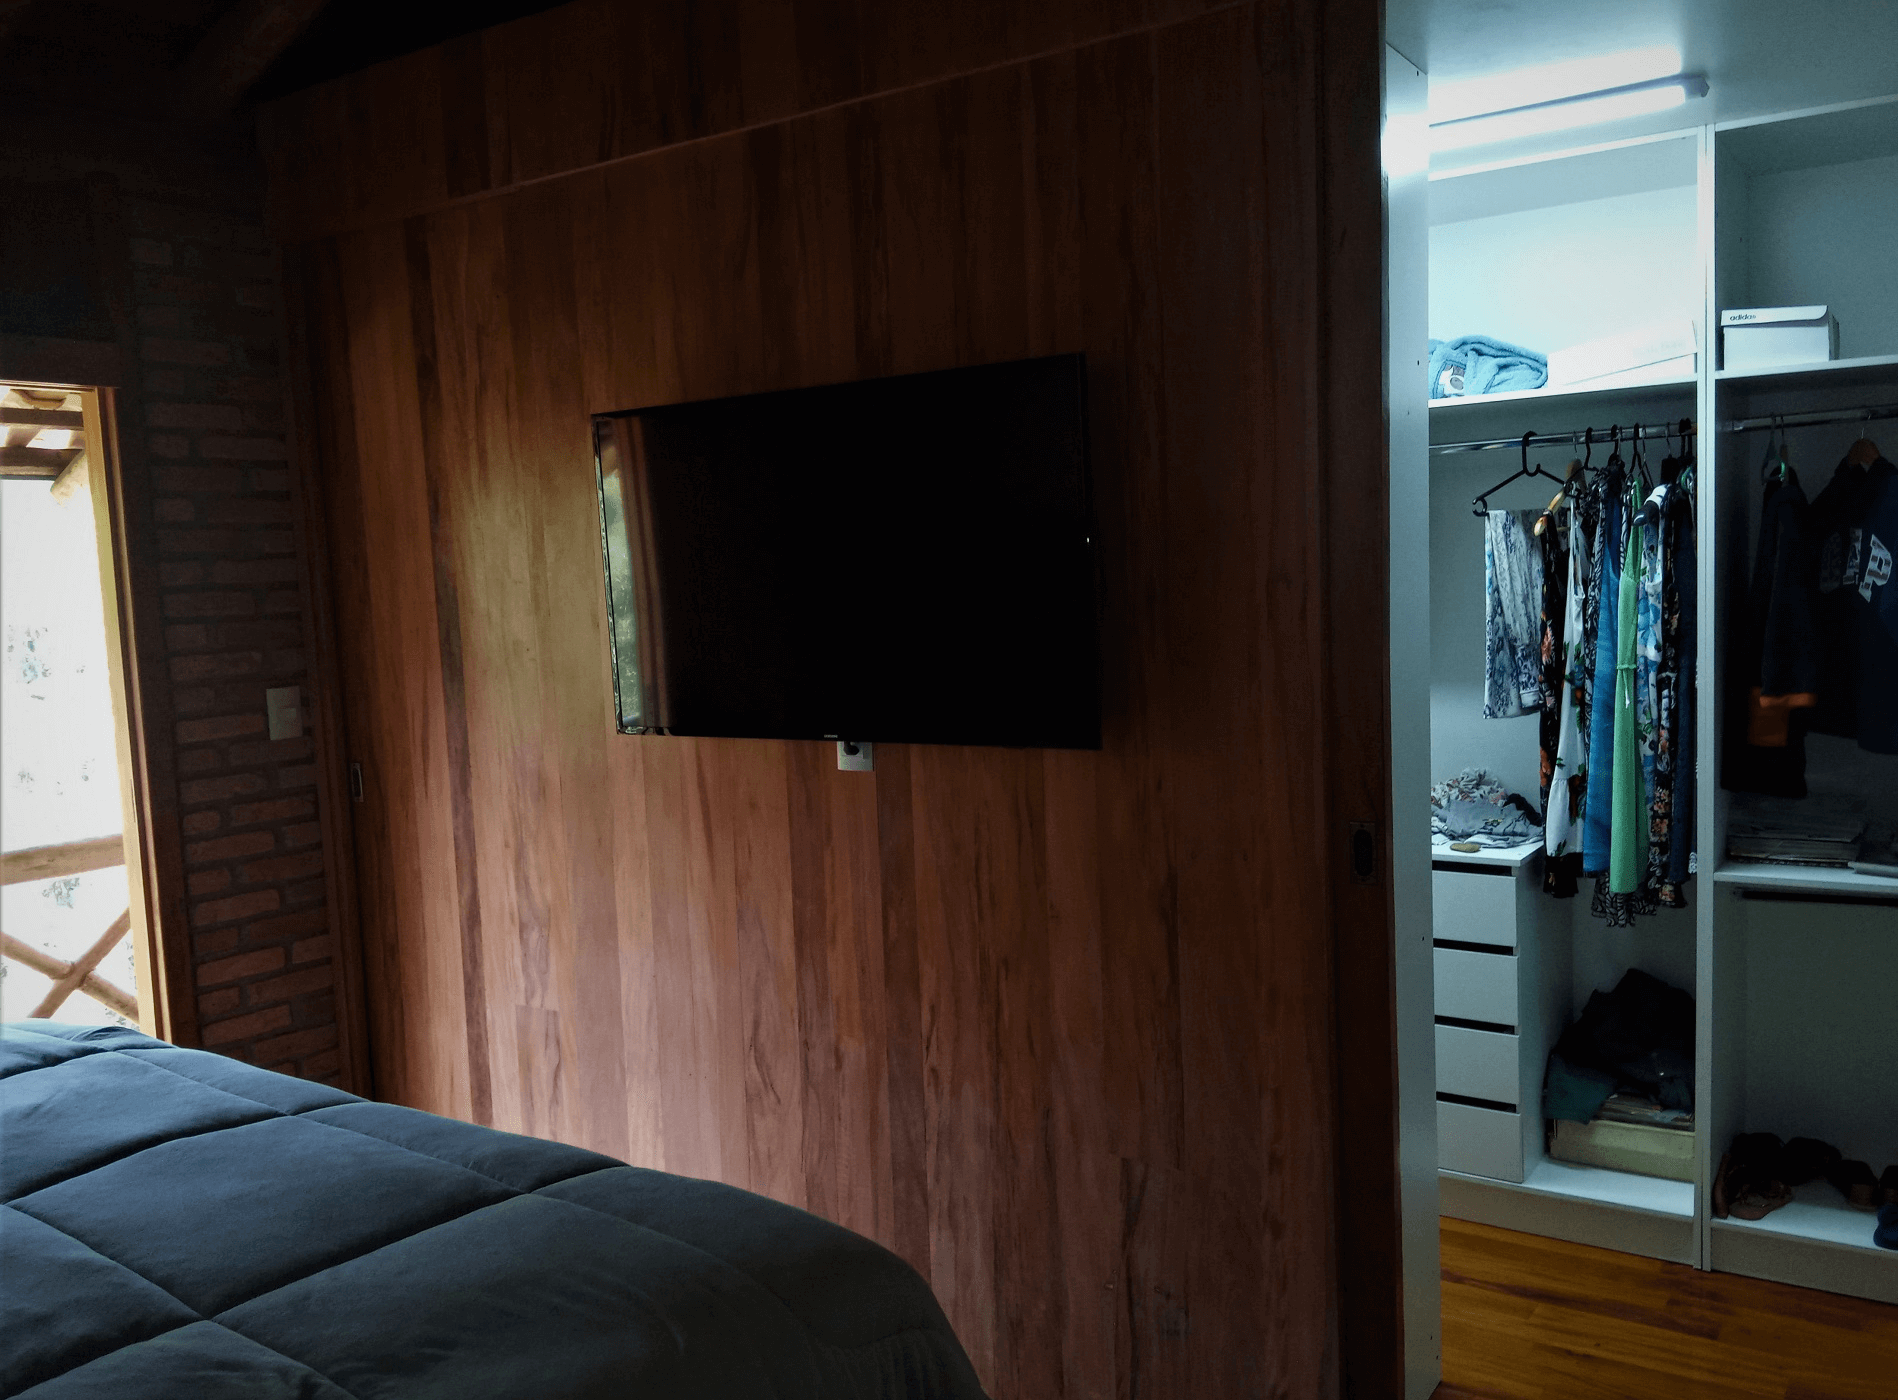 Nos dormitórios os painéis de Peroba Rosa de demolição servem com elemento de decoração e divisória entre a área de dormir e o Closet.